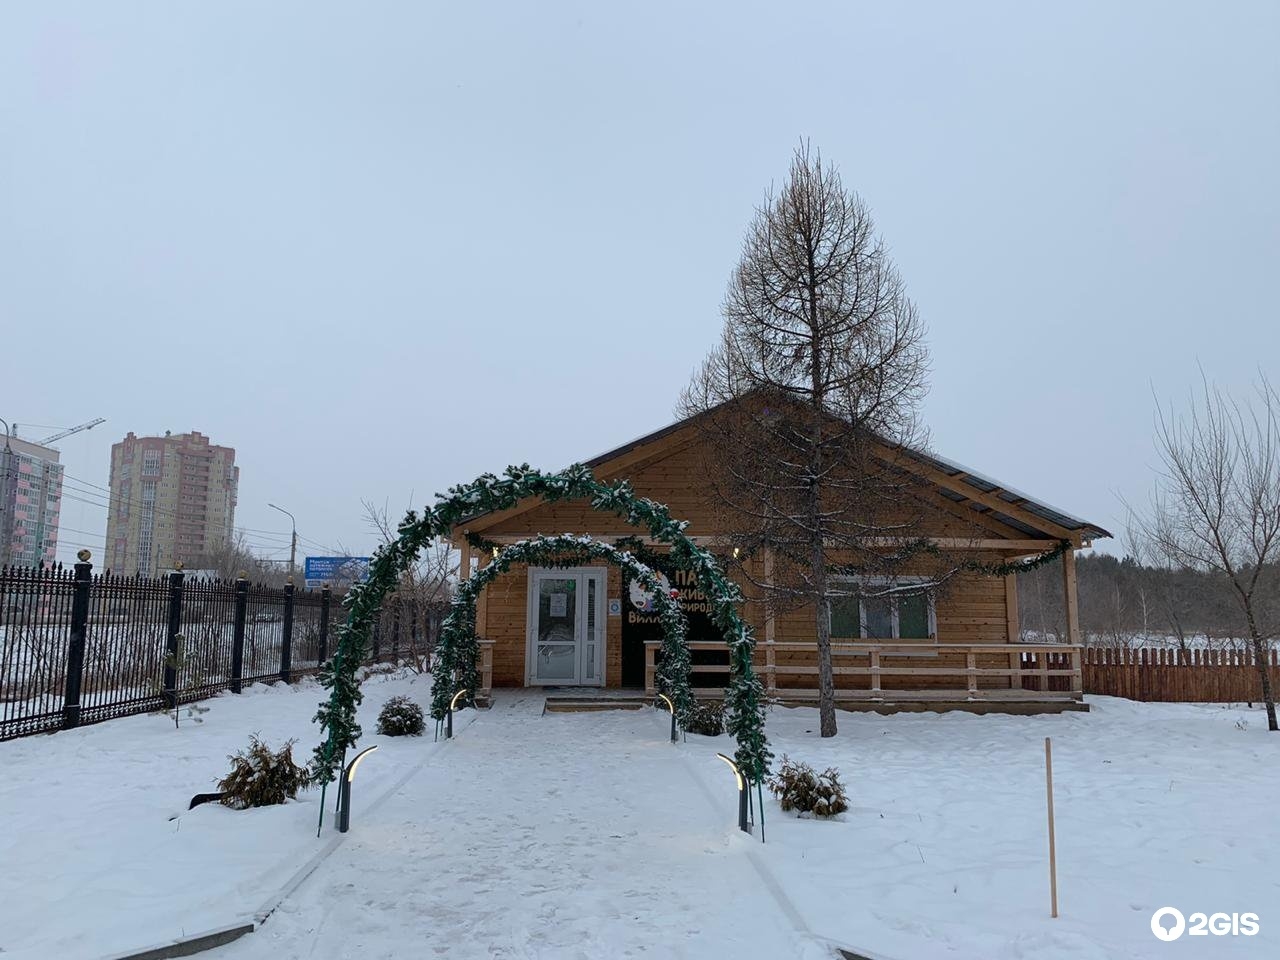 Фото 6: Парк имении 300-летия Омска